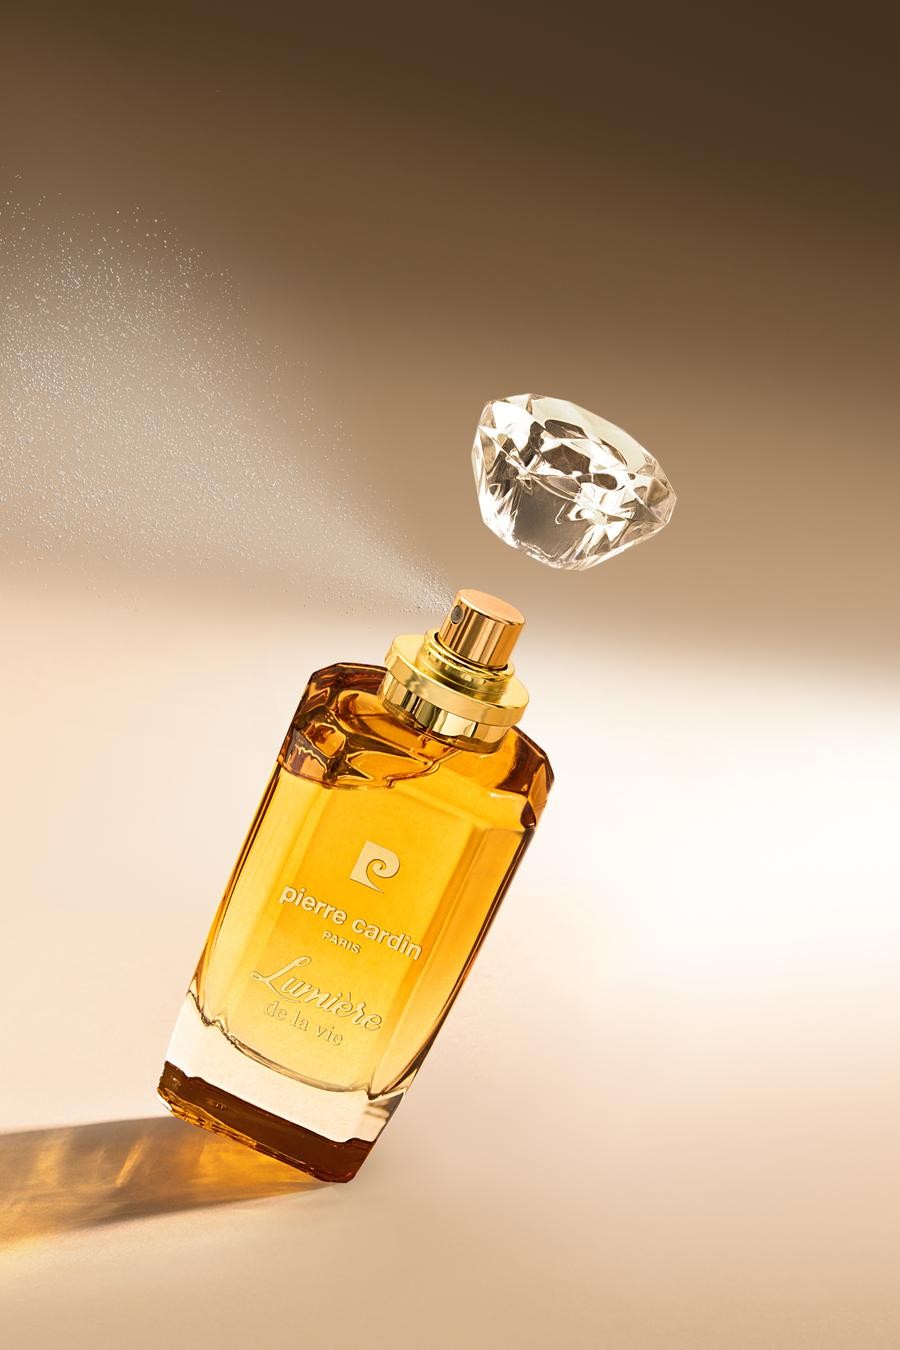 Pierre Cardin Kadın Parfüm 50 ml